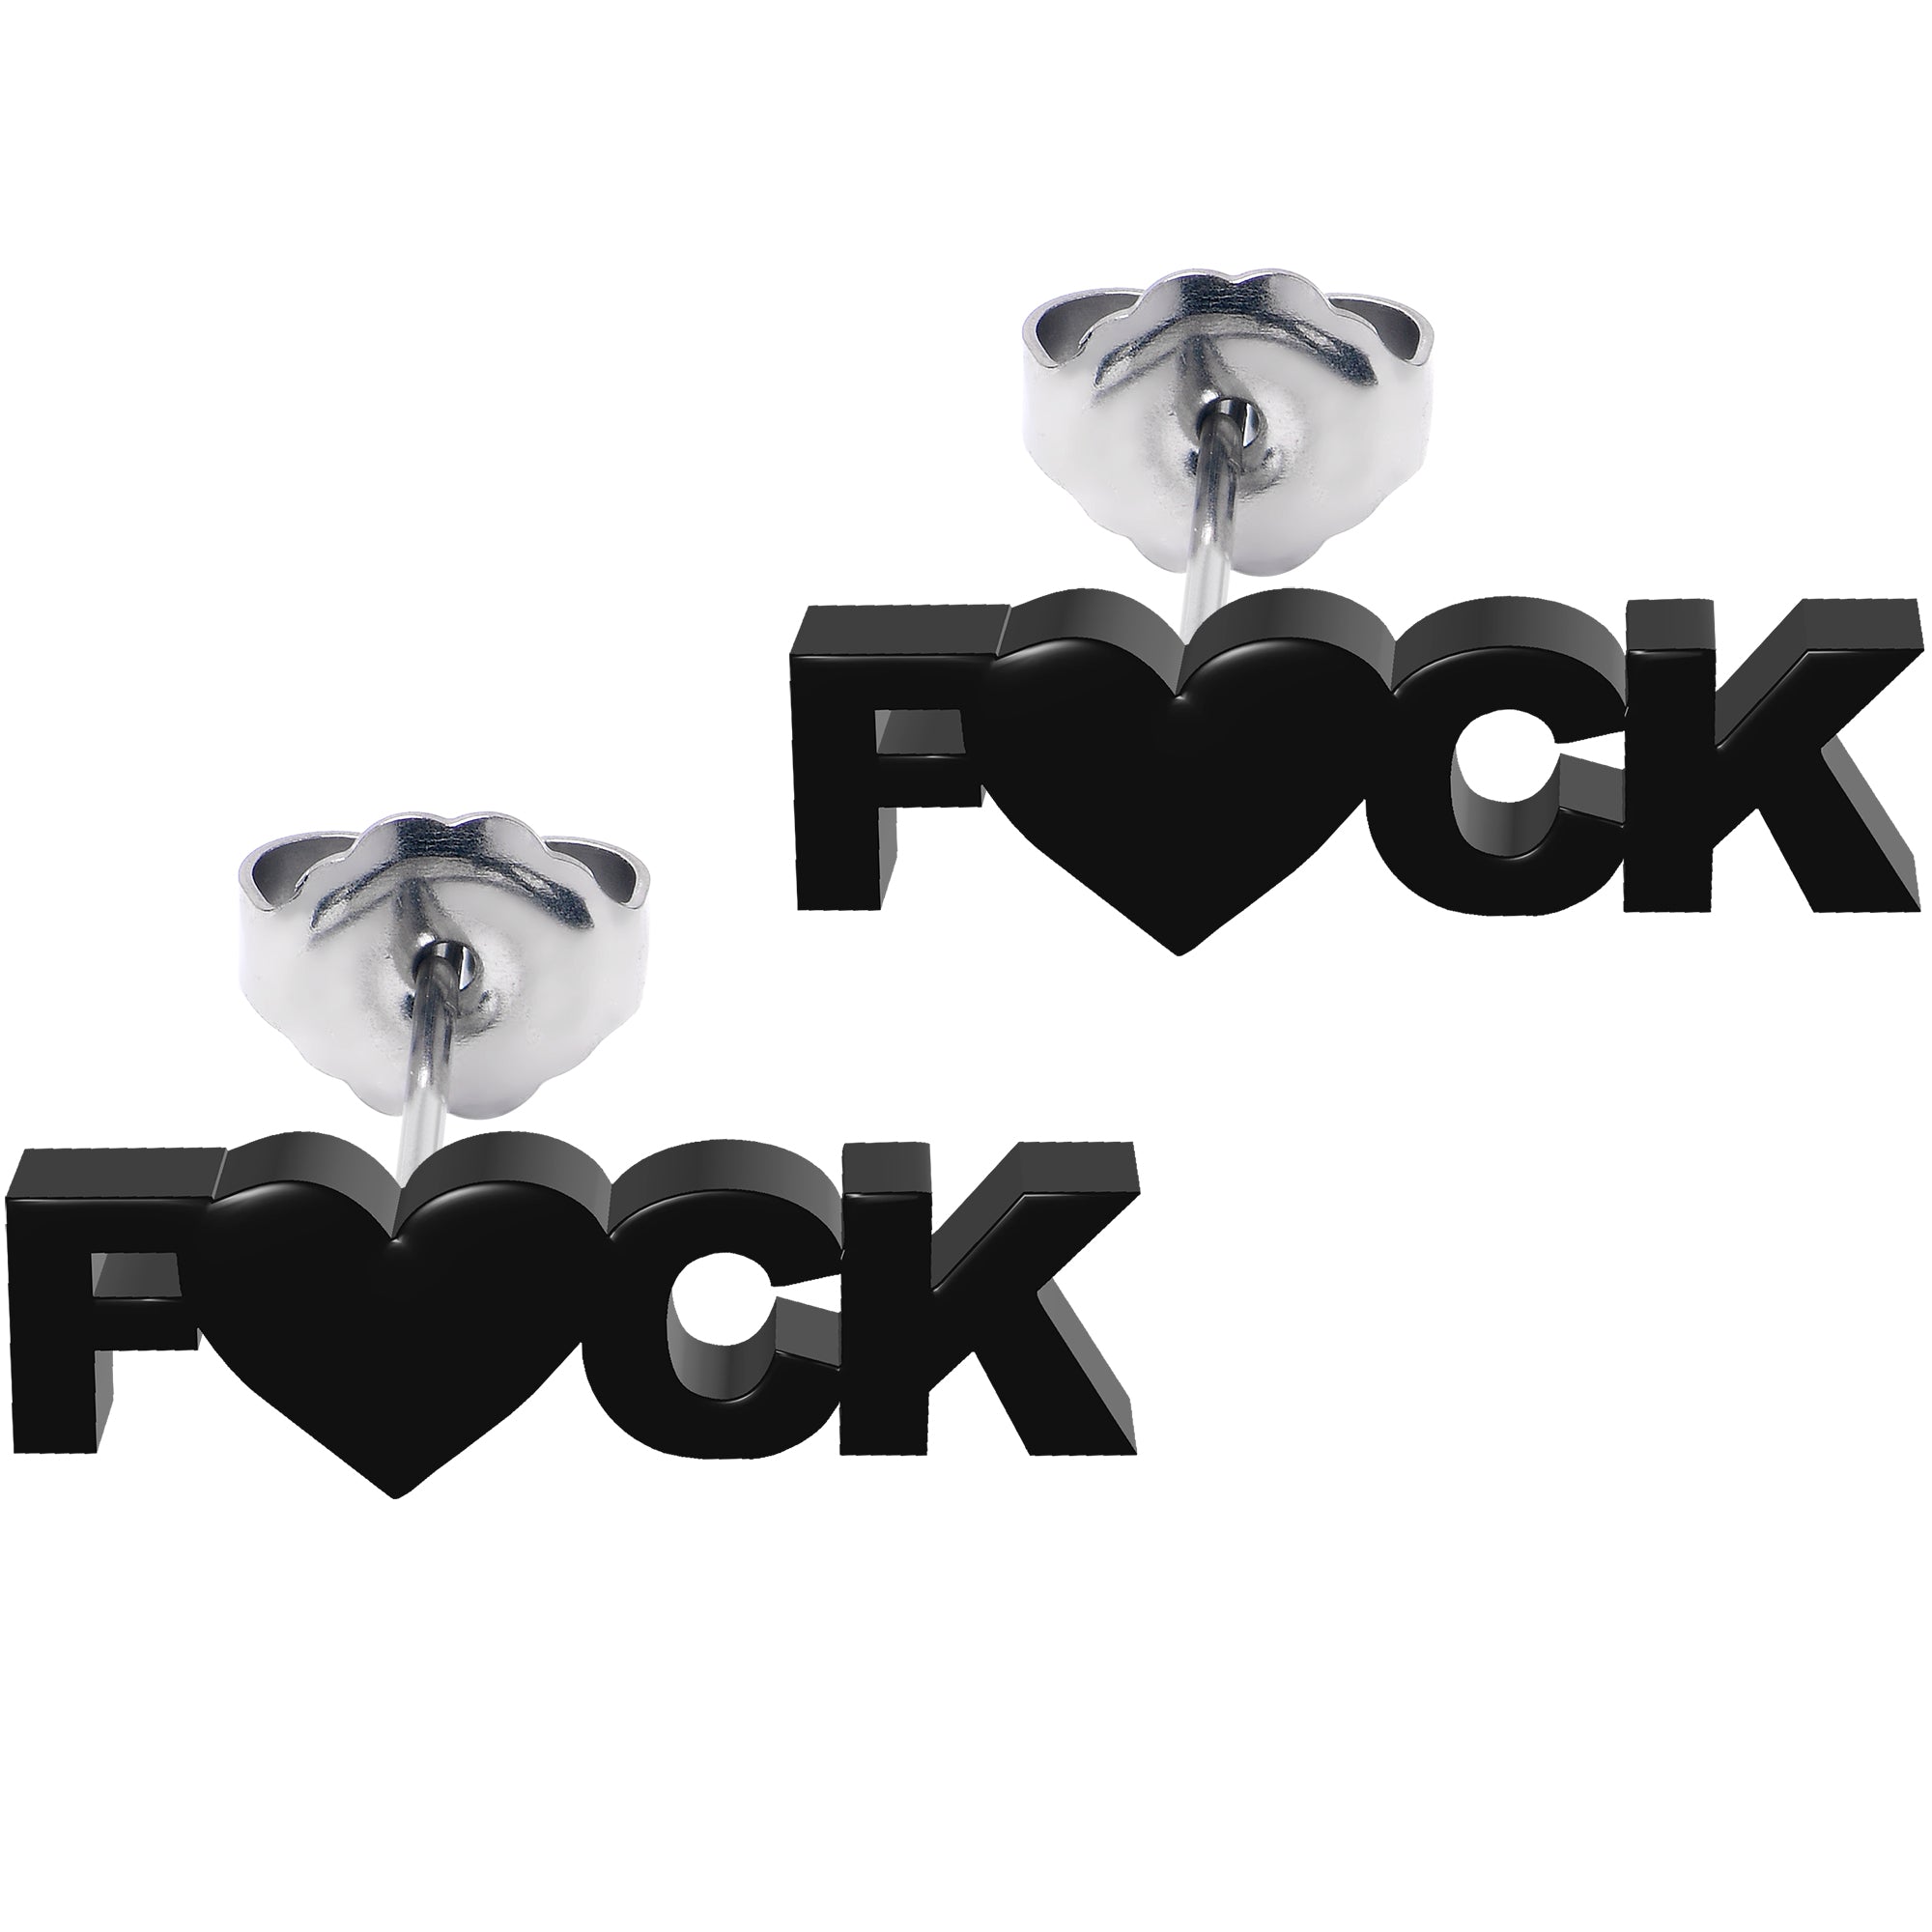 Black Acrylic Stainless Steel F*ck Heart Stud Earrings